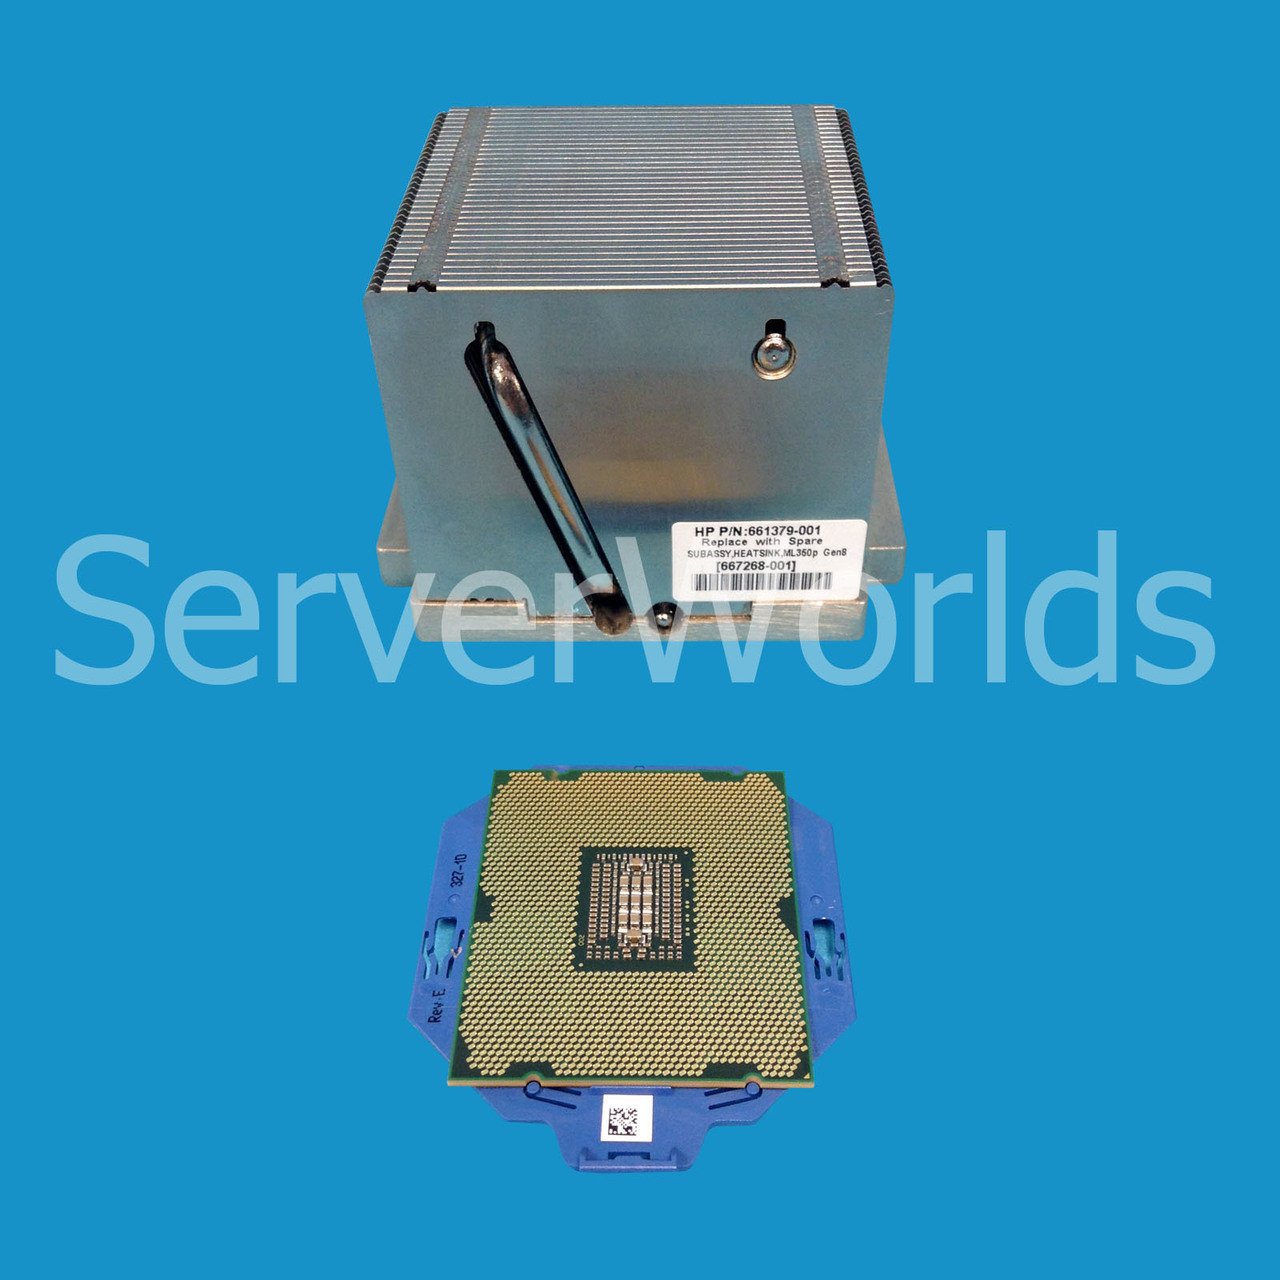 HP 660607-B21 ML350p Gen8 E5-2630L 6C 2.0GHz Processor Kit 